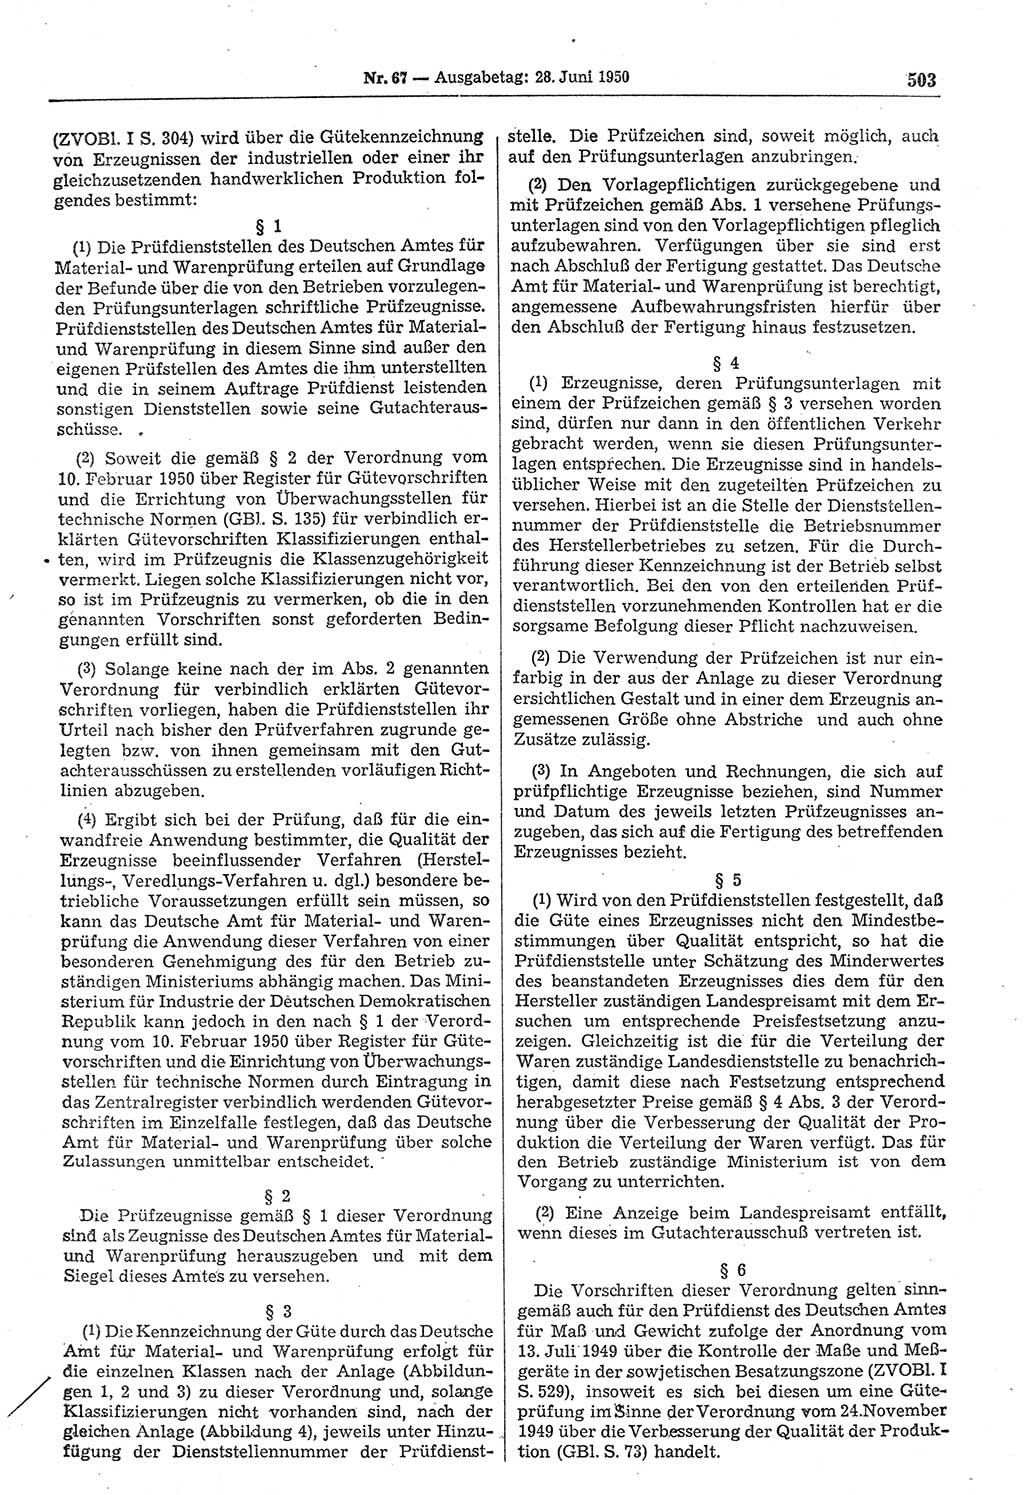 Gesetzblatt (GBl.) der Deutschen Demokratischen Republik (DDR) 1950, Seite 503 (GBl. DDR 1950, S. 503)